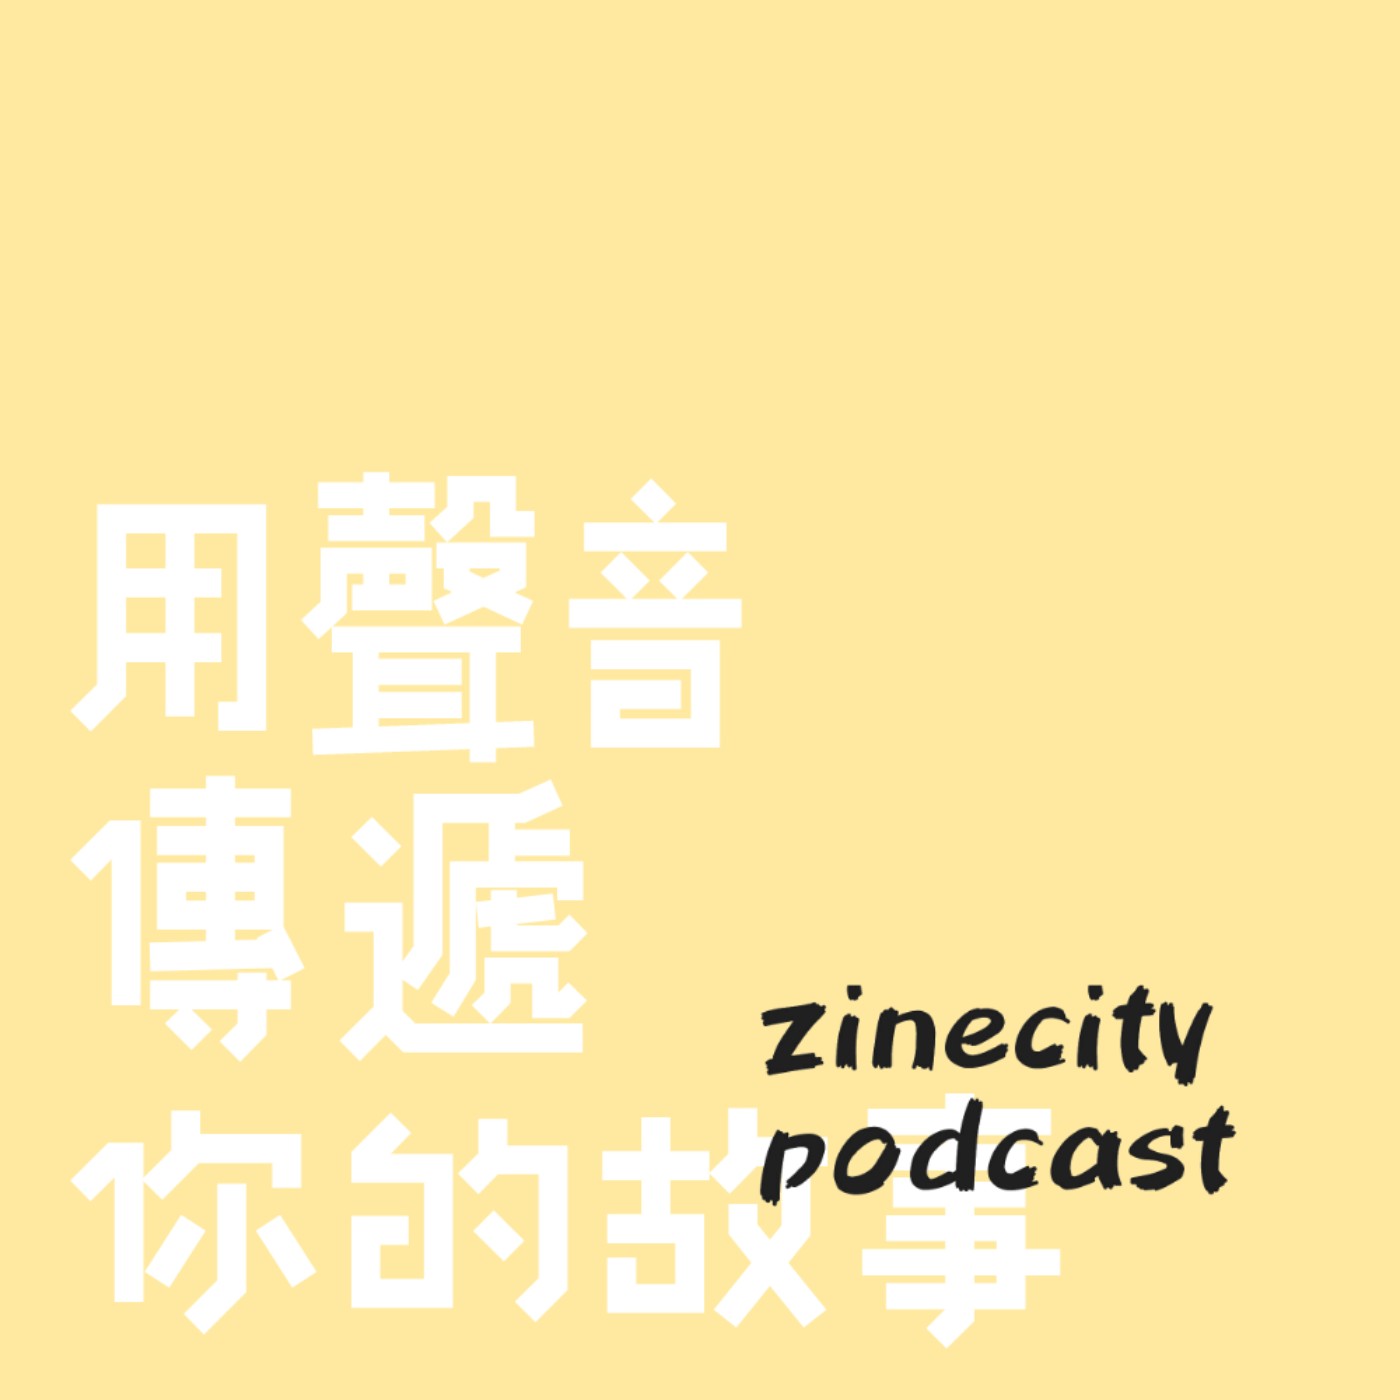 Zinecity Podcast